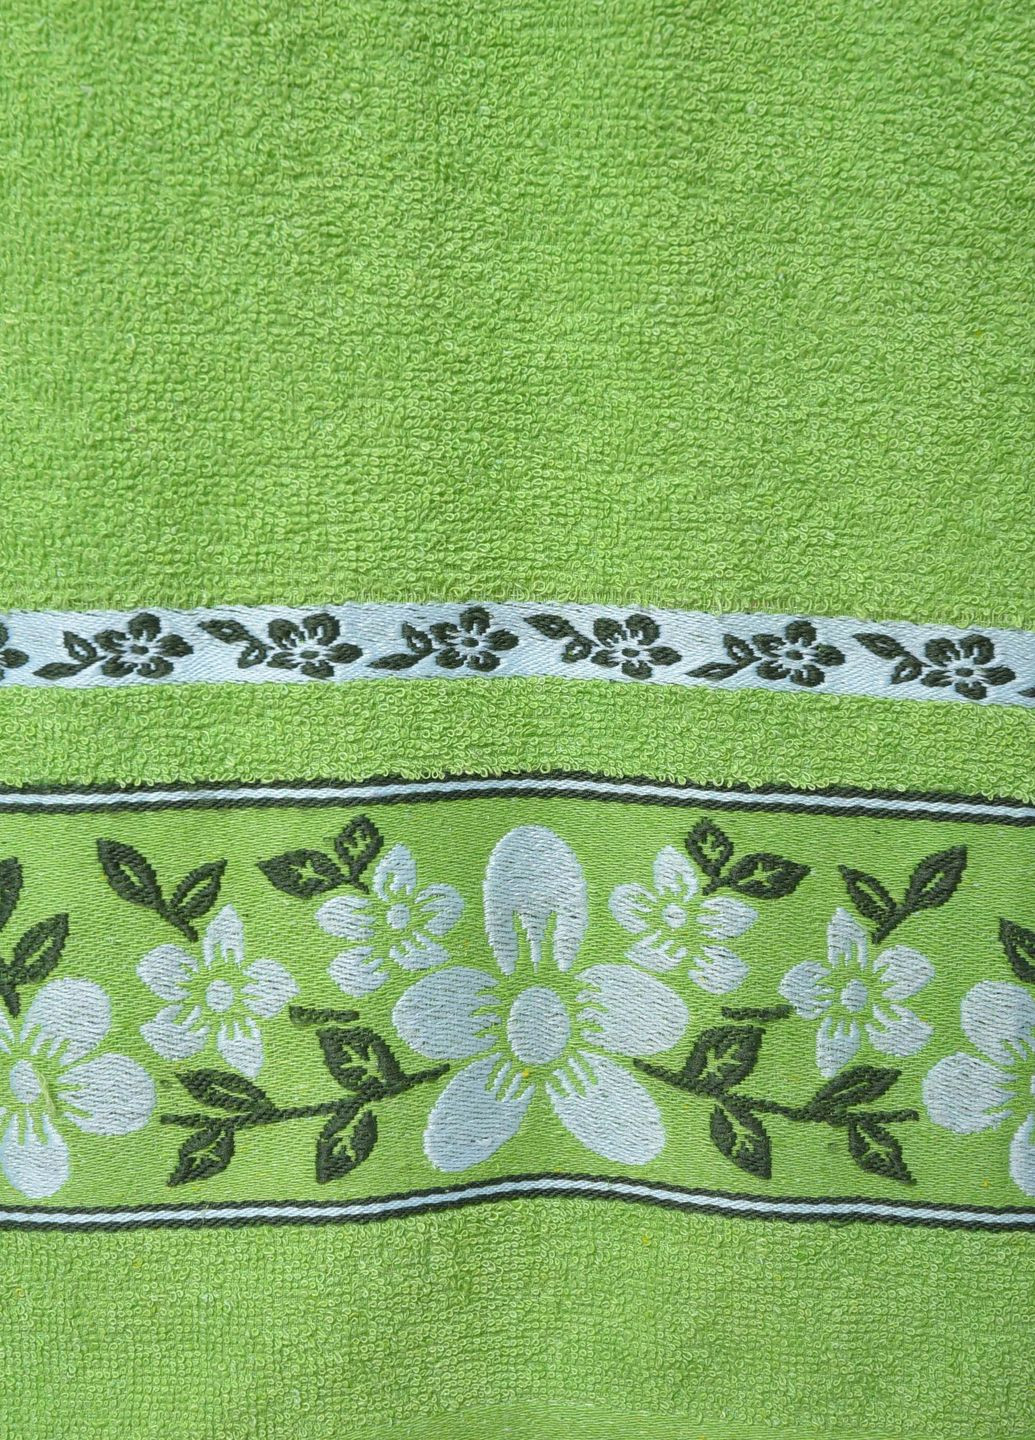 Let's Shop полотенце банное махровое зеленого цвета однотонный зеленый производство - Турция